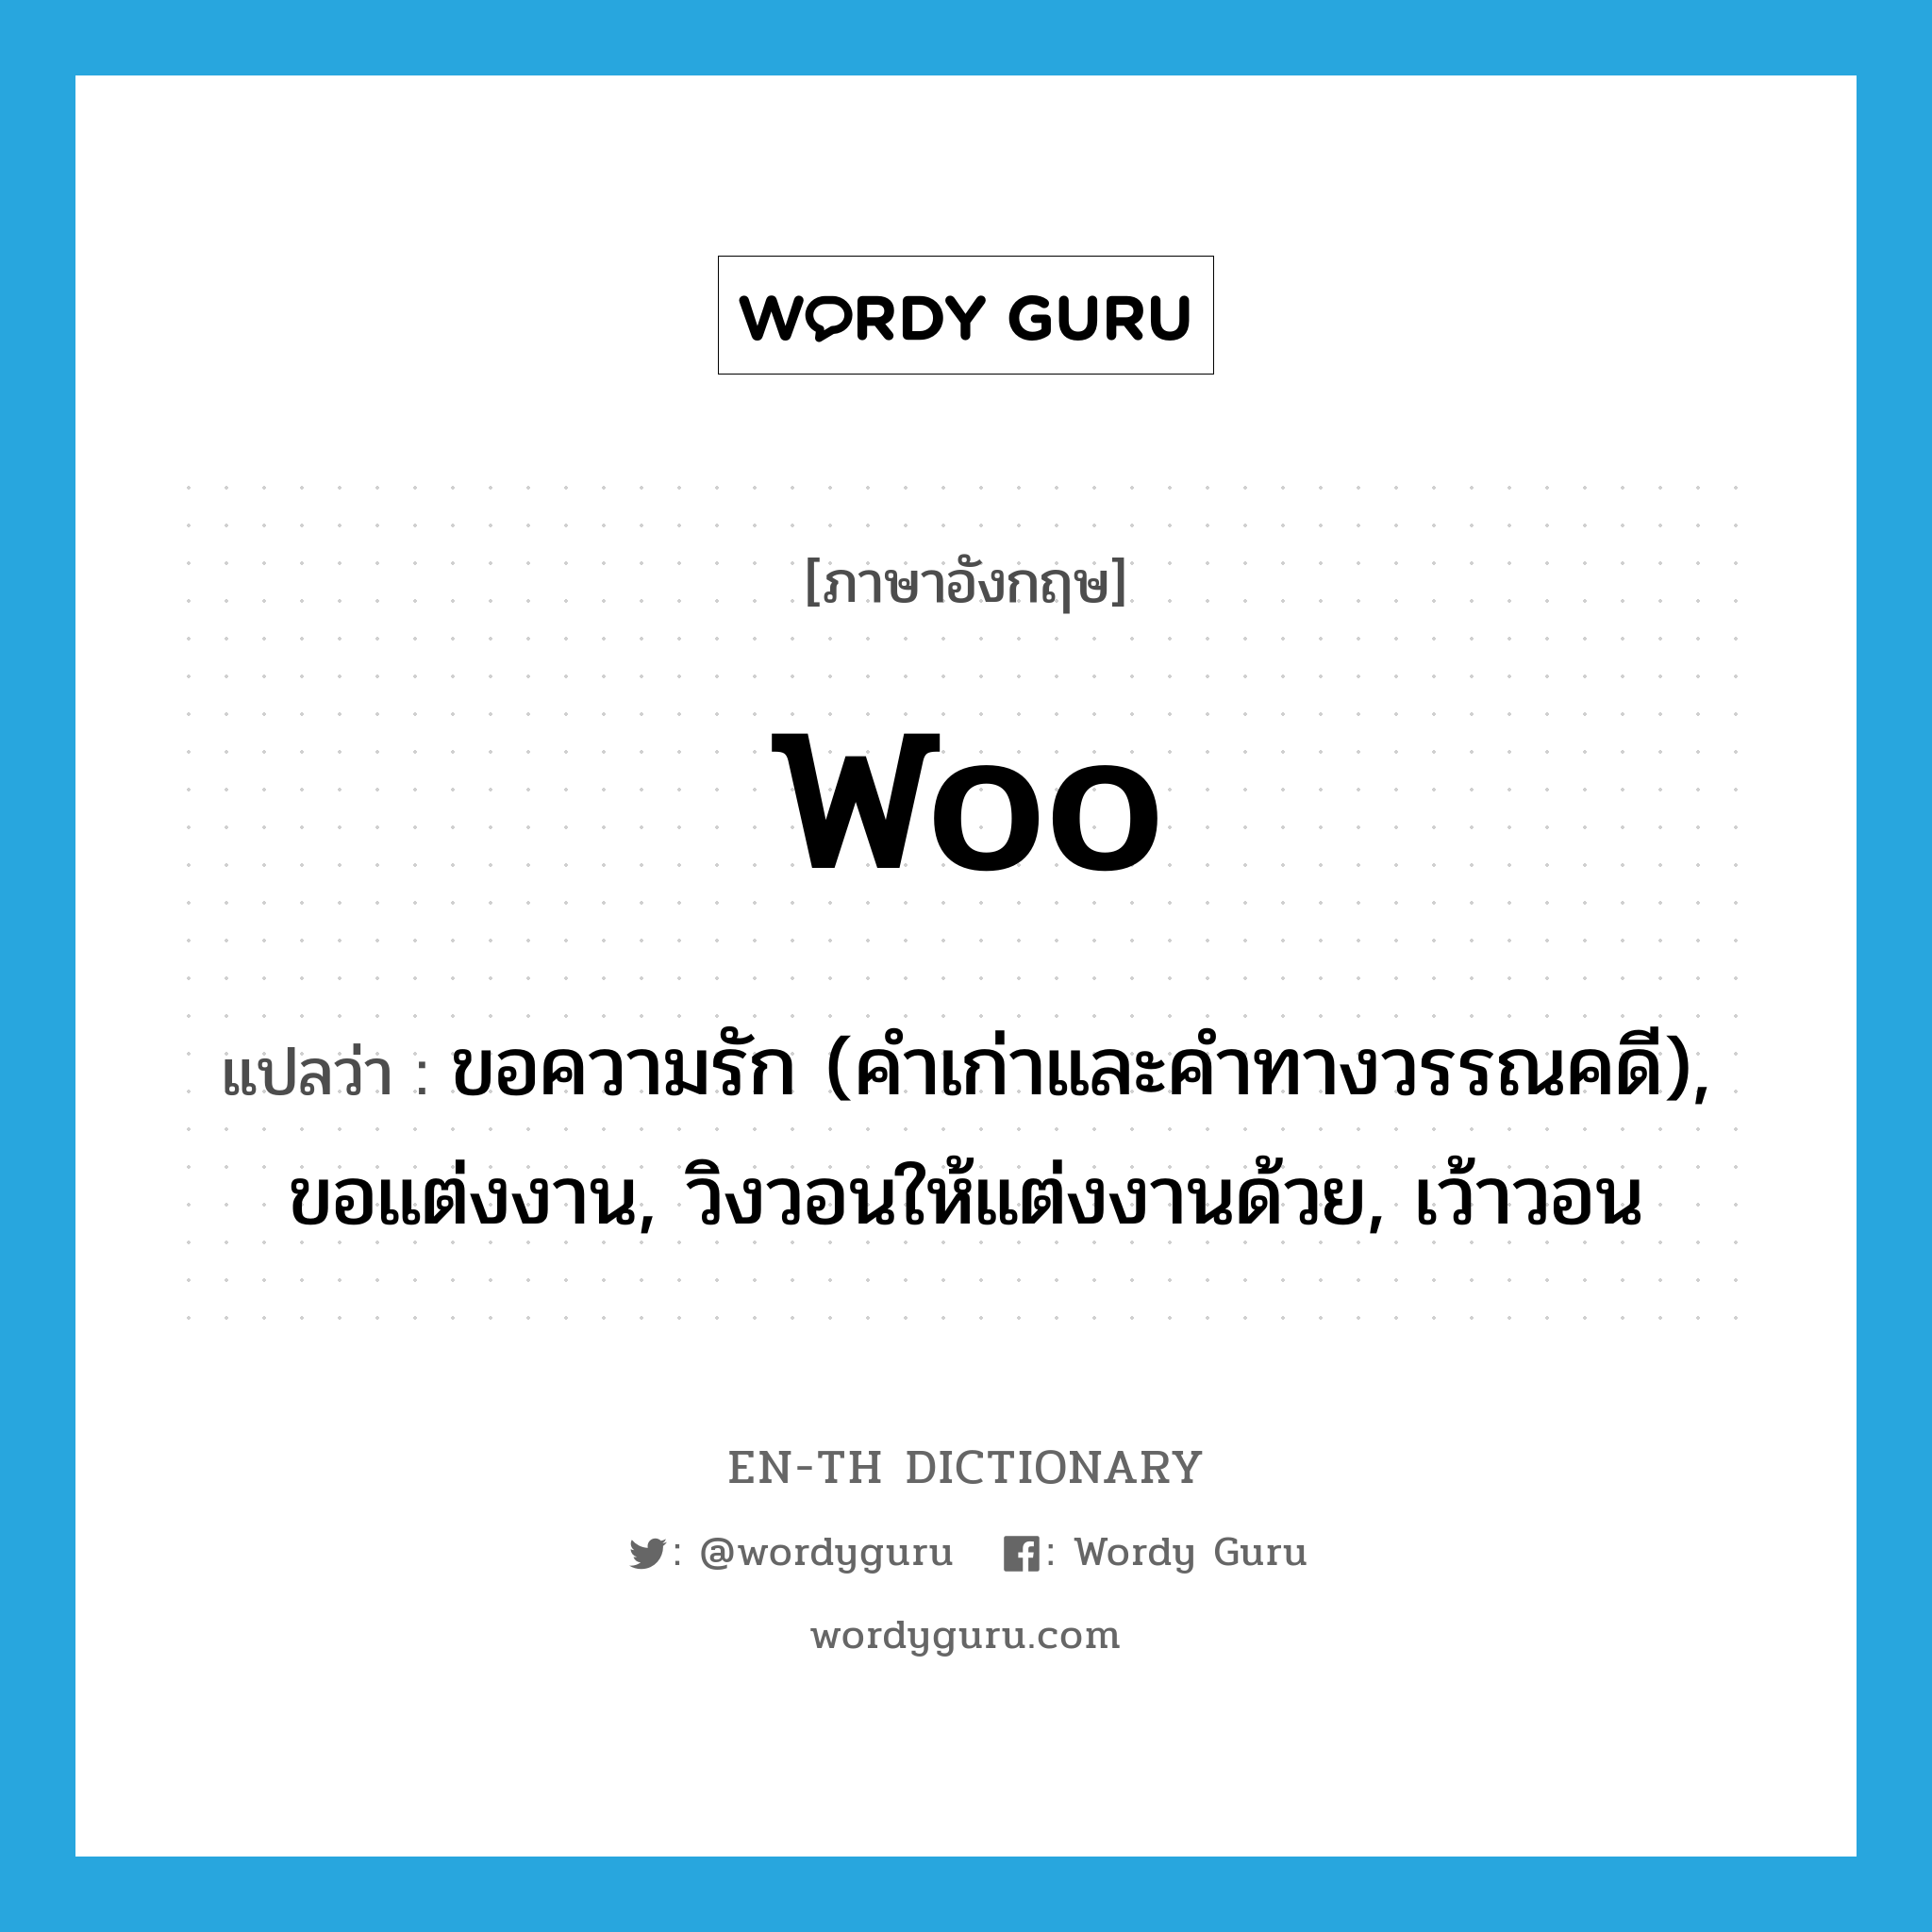 woo แปลว่า?, คำศัพท์ภาษาอังกฤษ woo แปลว่า ขอความรัก (คำเก่าและคำทางวรรณคดี), ขอแต่งงาน, วิงวอนให้แต่งงานด้วย, เว้าวอน ประเภท VI หมวด VI